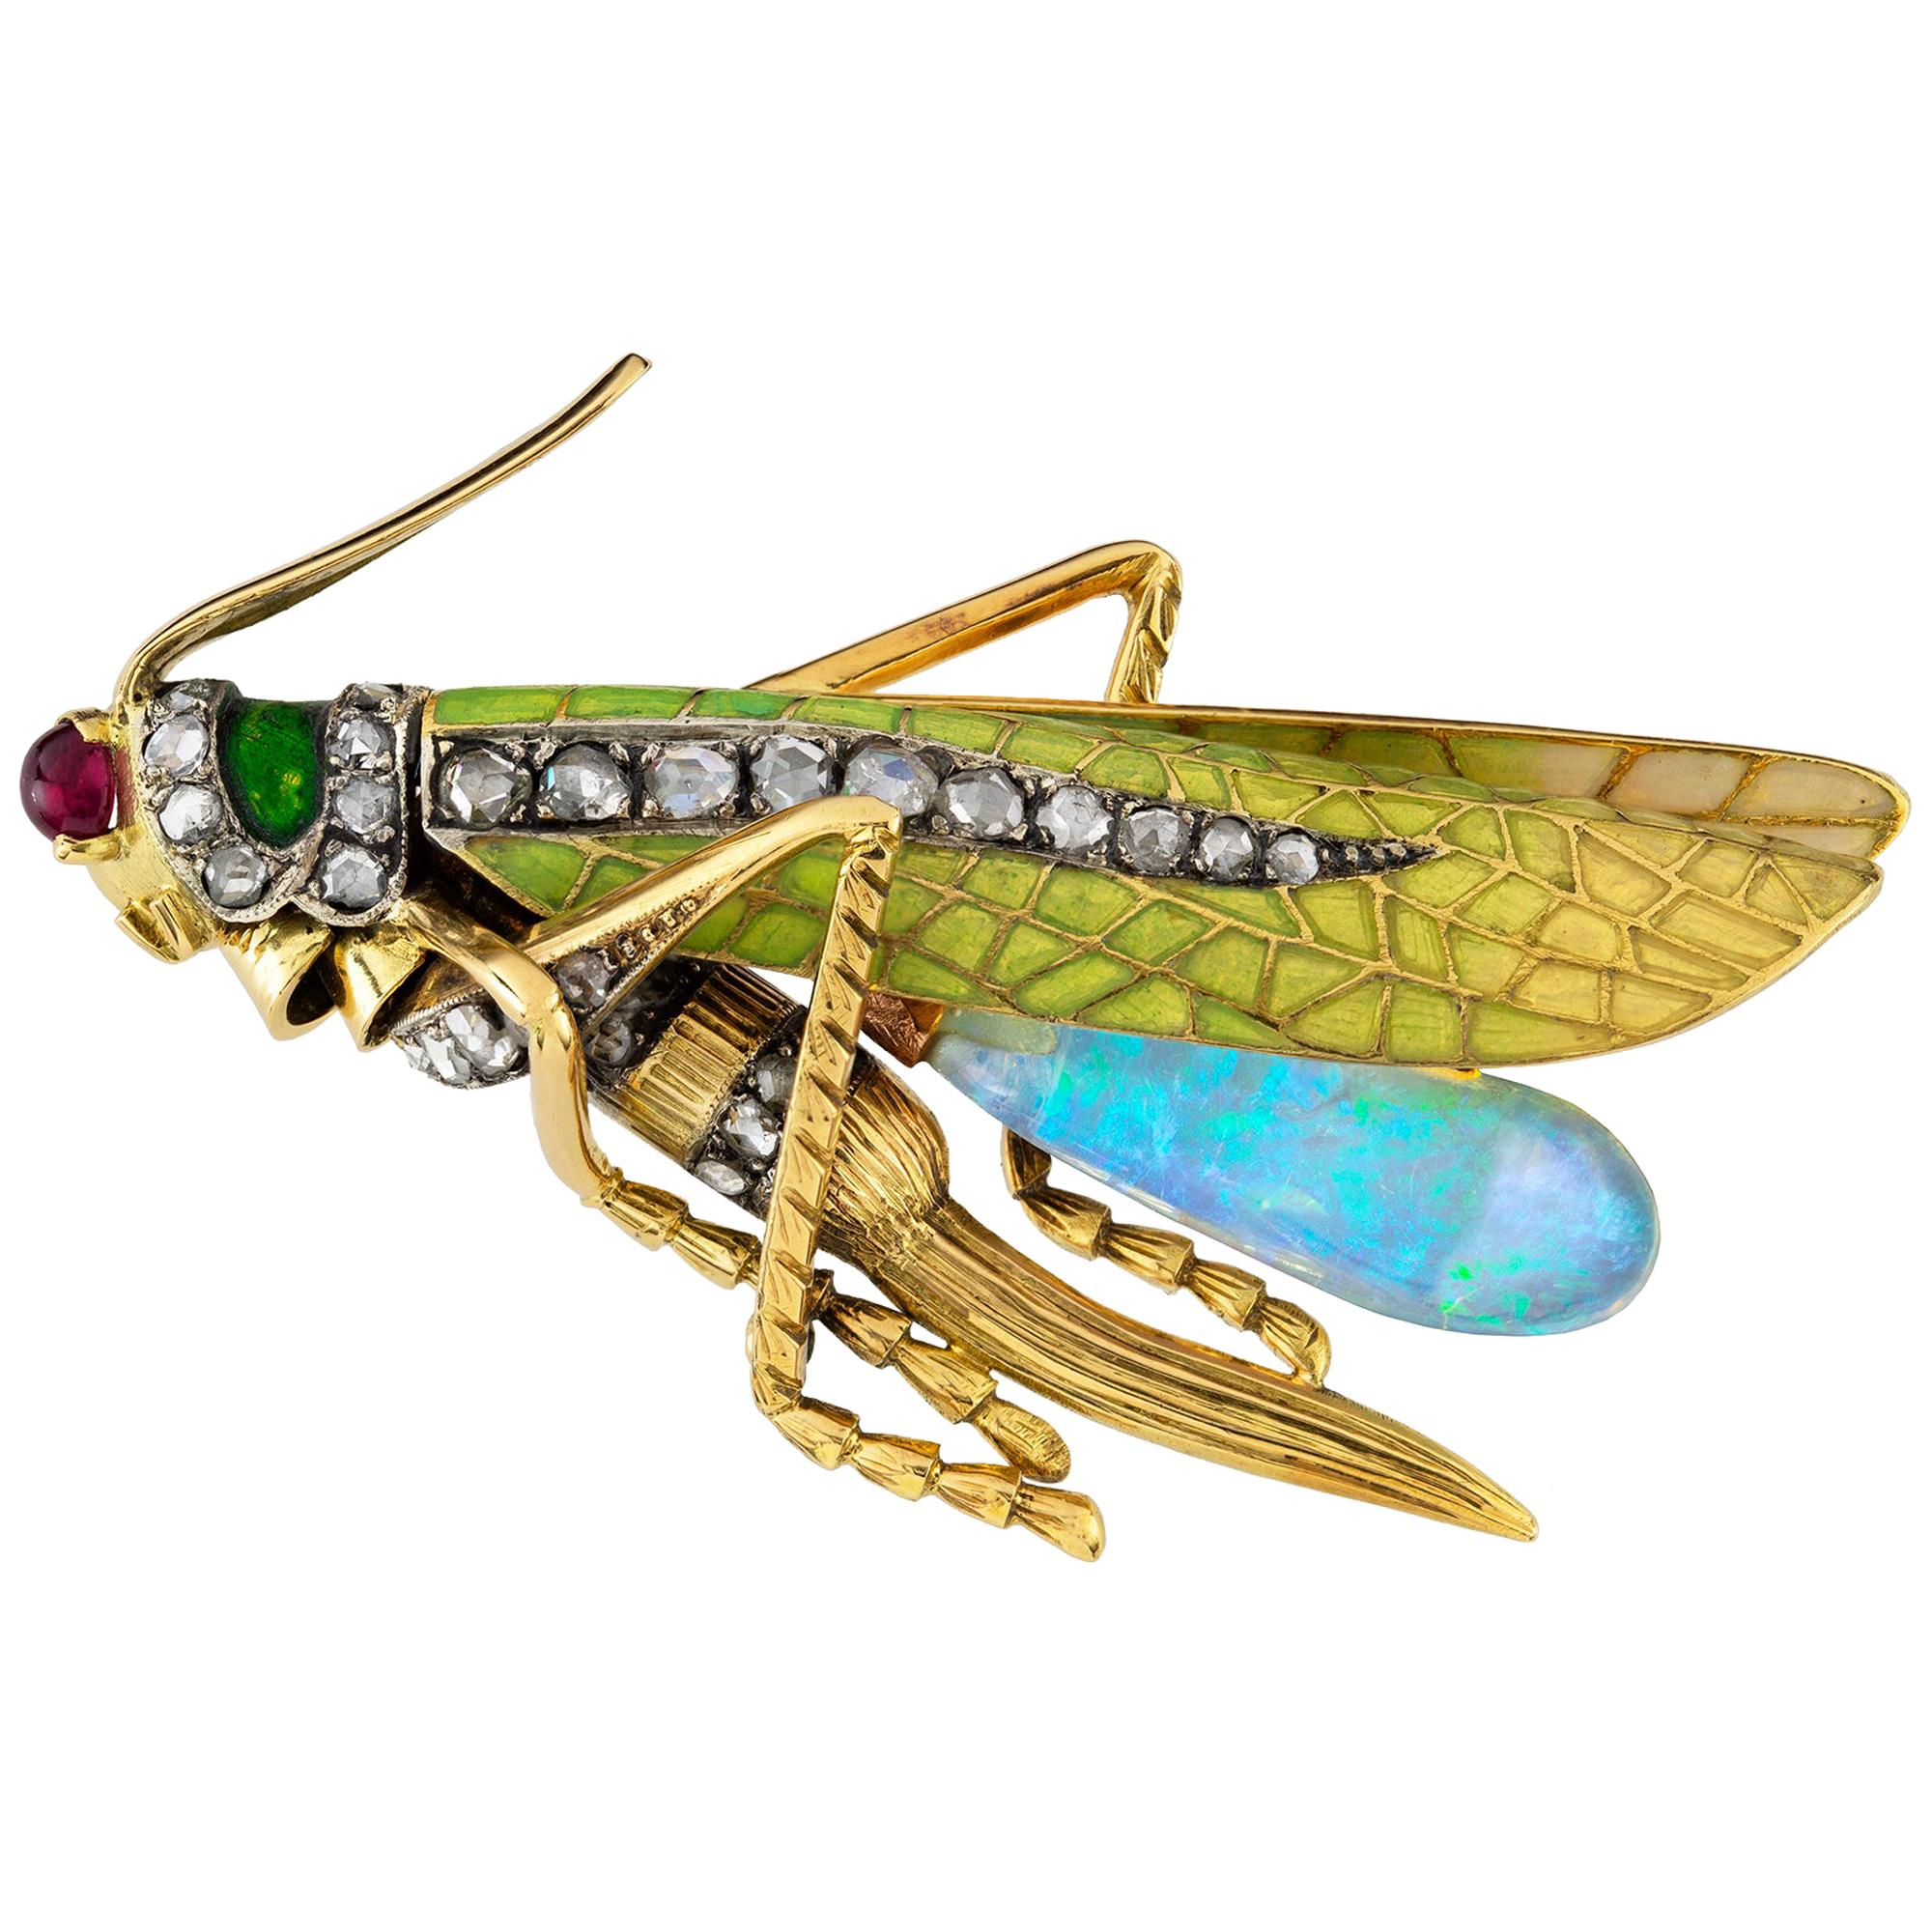 Art Nouveau Grasshopper Brooch